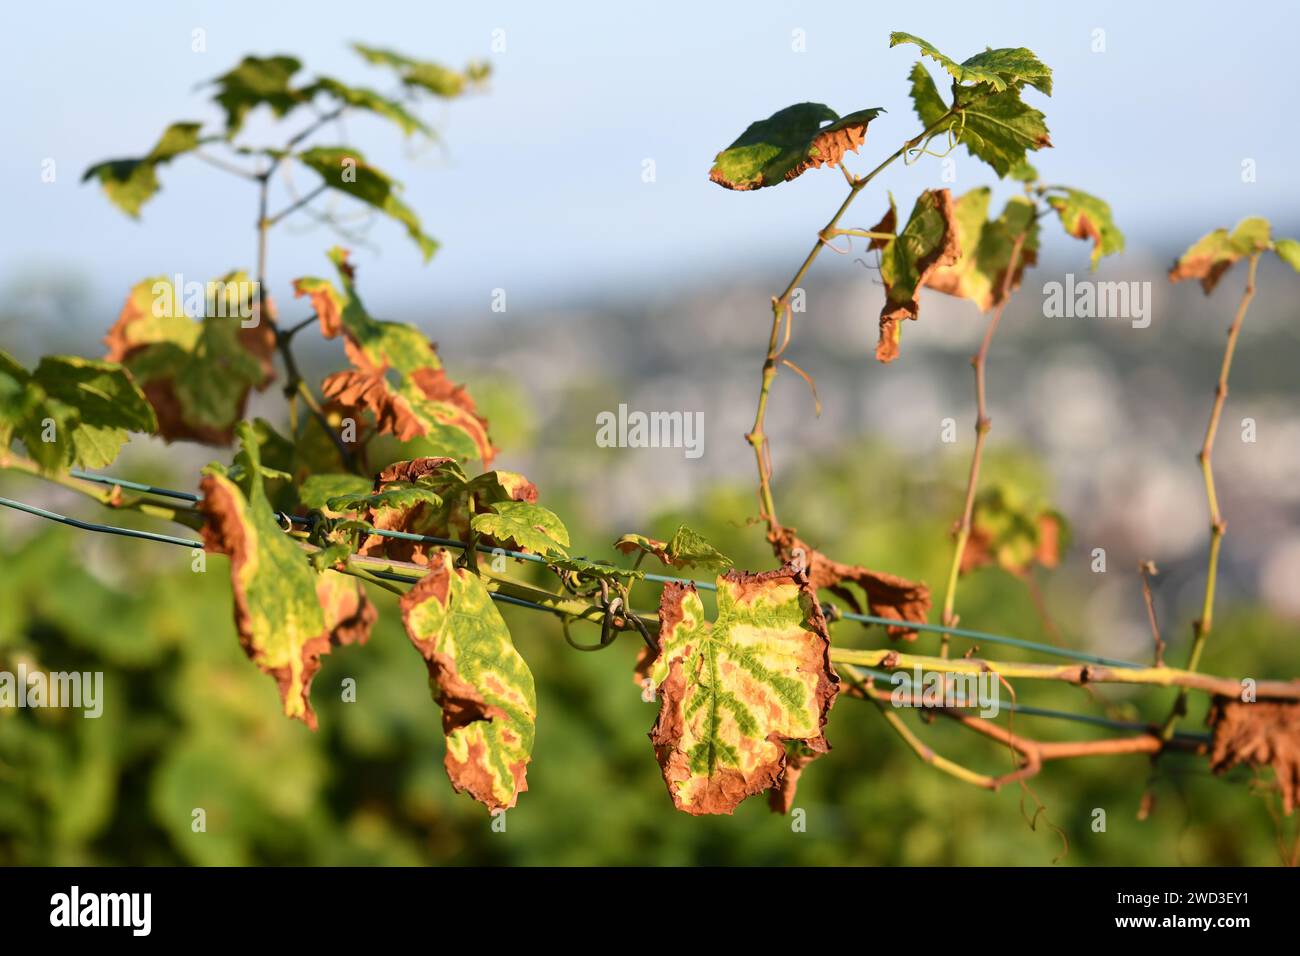 Herbstblätter im Weinberg - Zweig mit grün-gelb-braunen Blättern auf der Rebe. Stockfoto